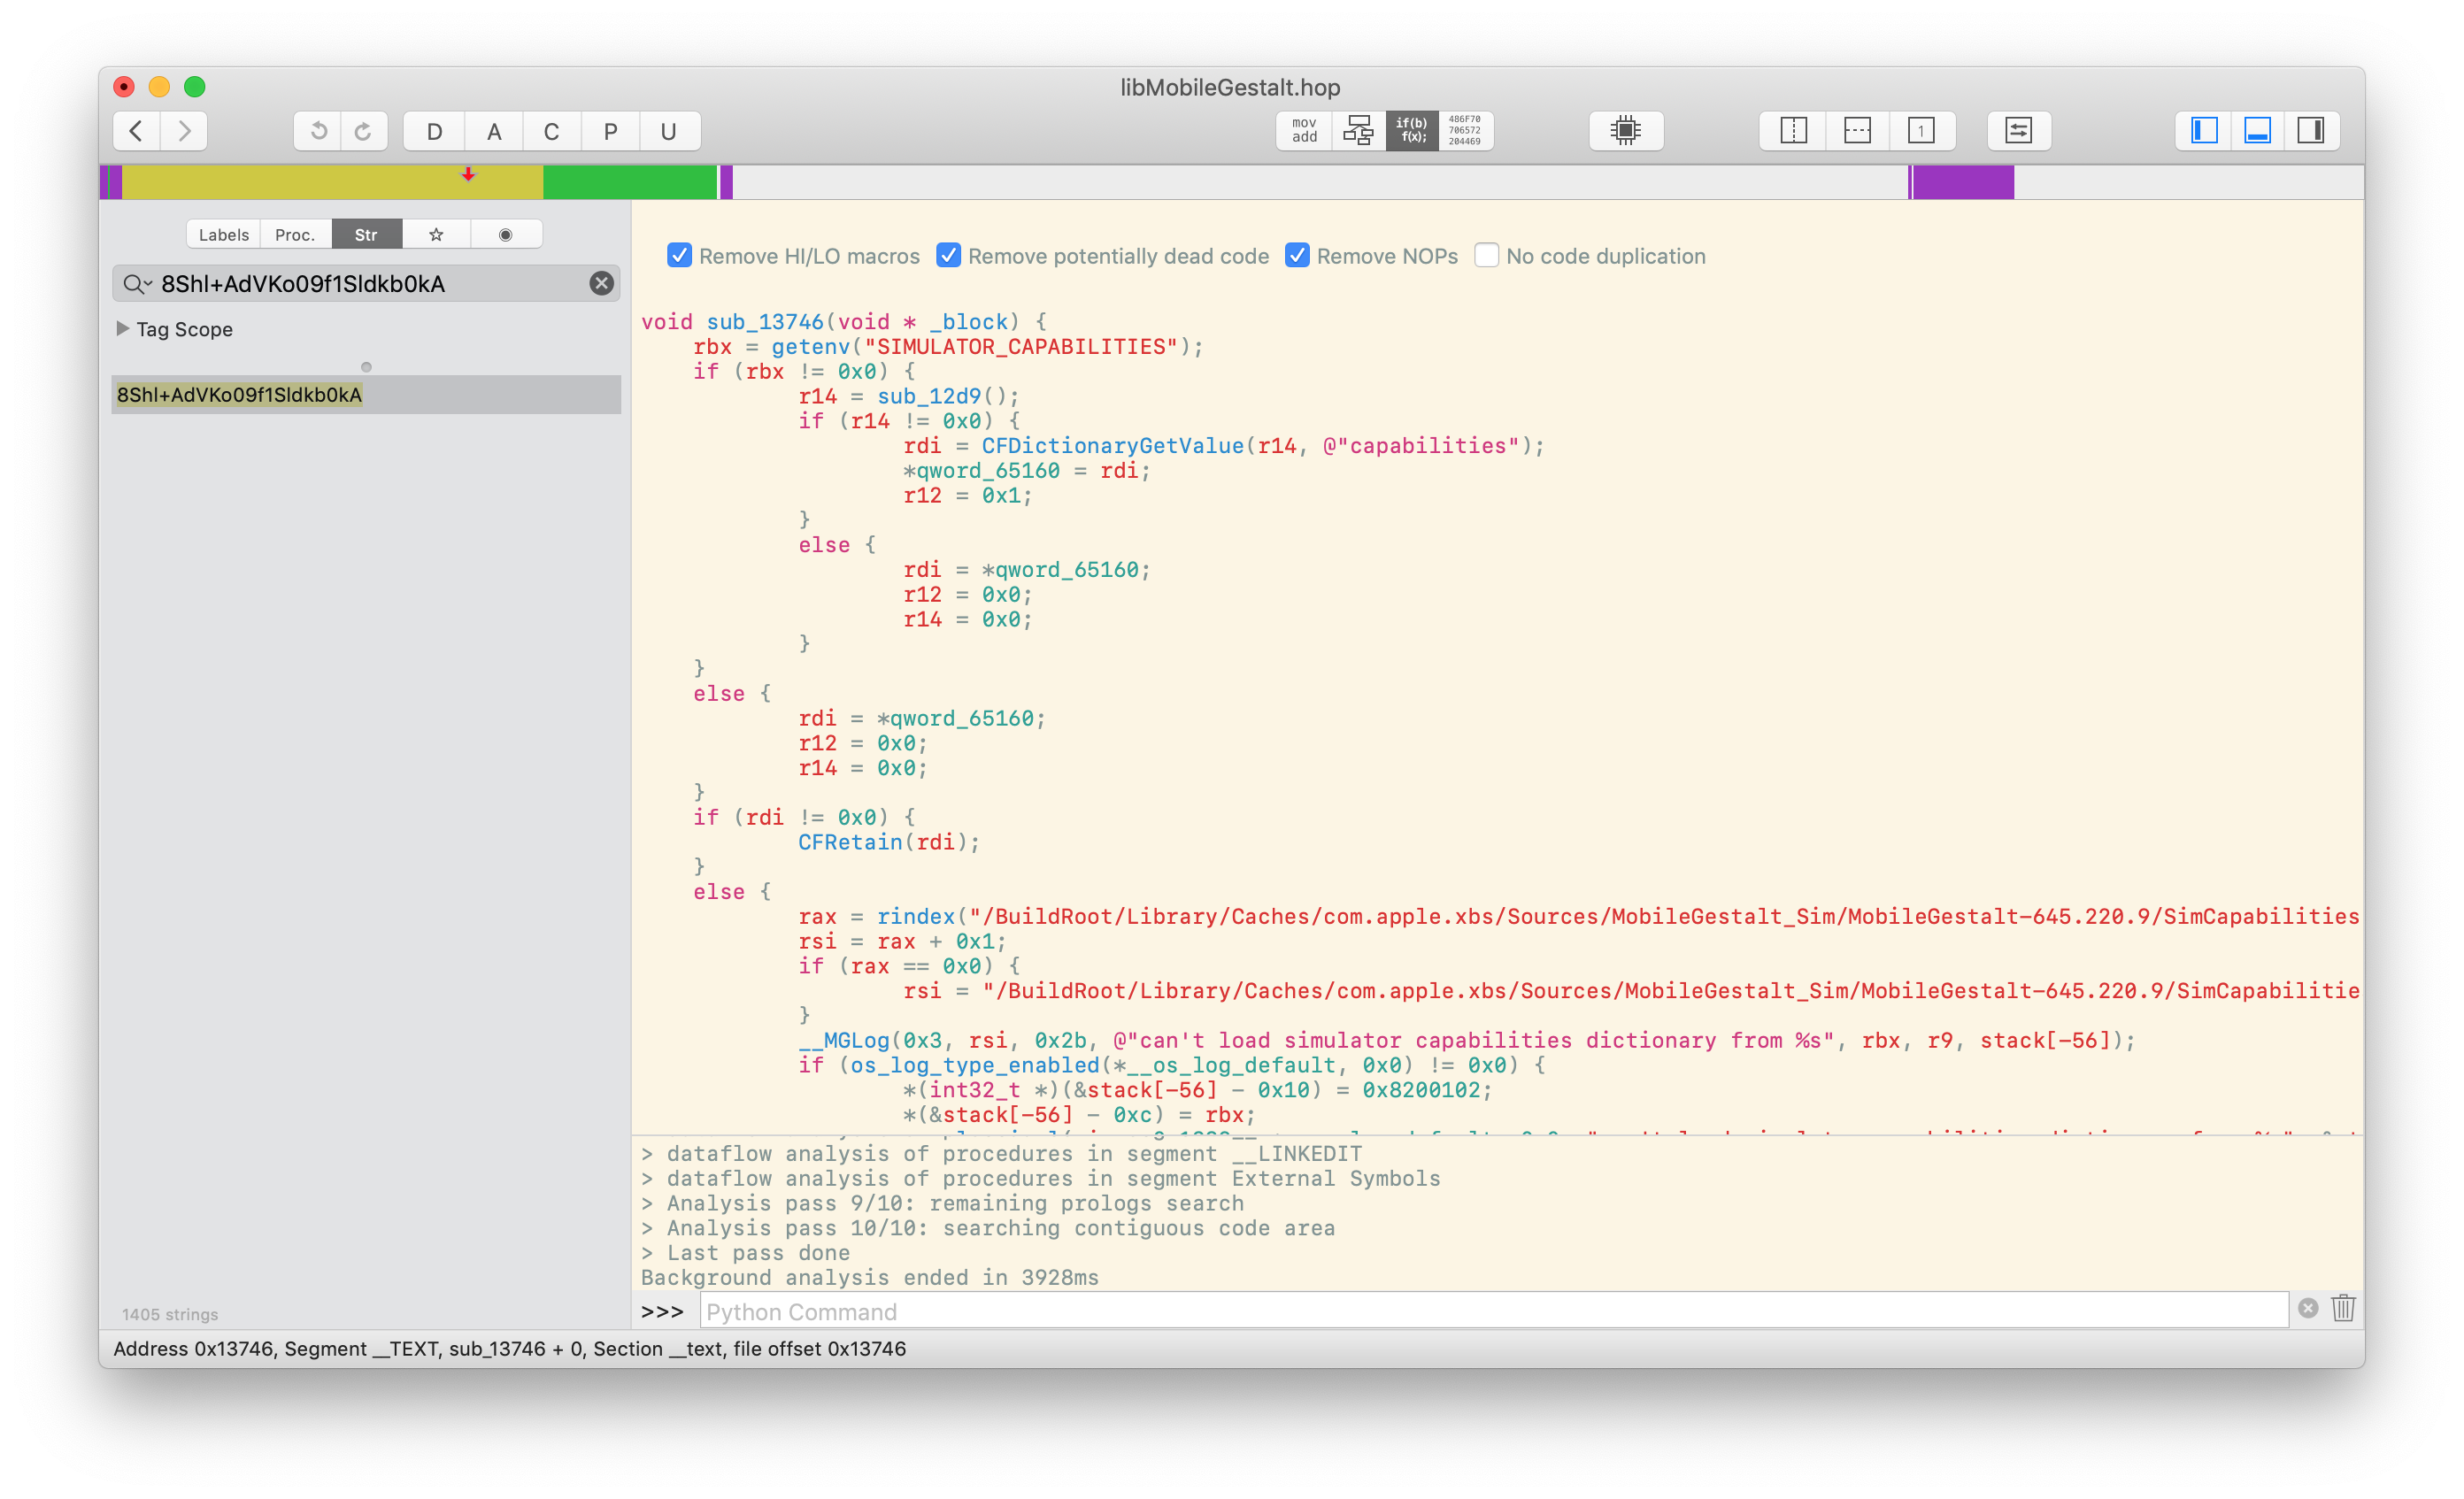 Hopper disassembly of a function inside of libMobileGestalt